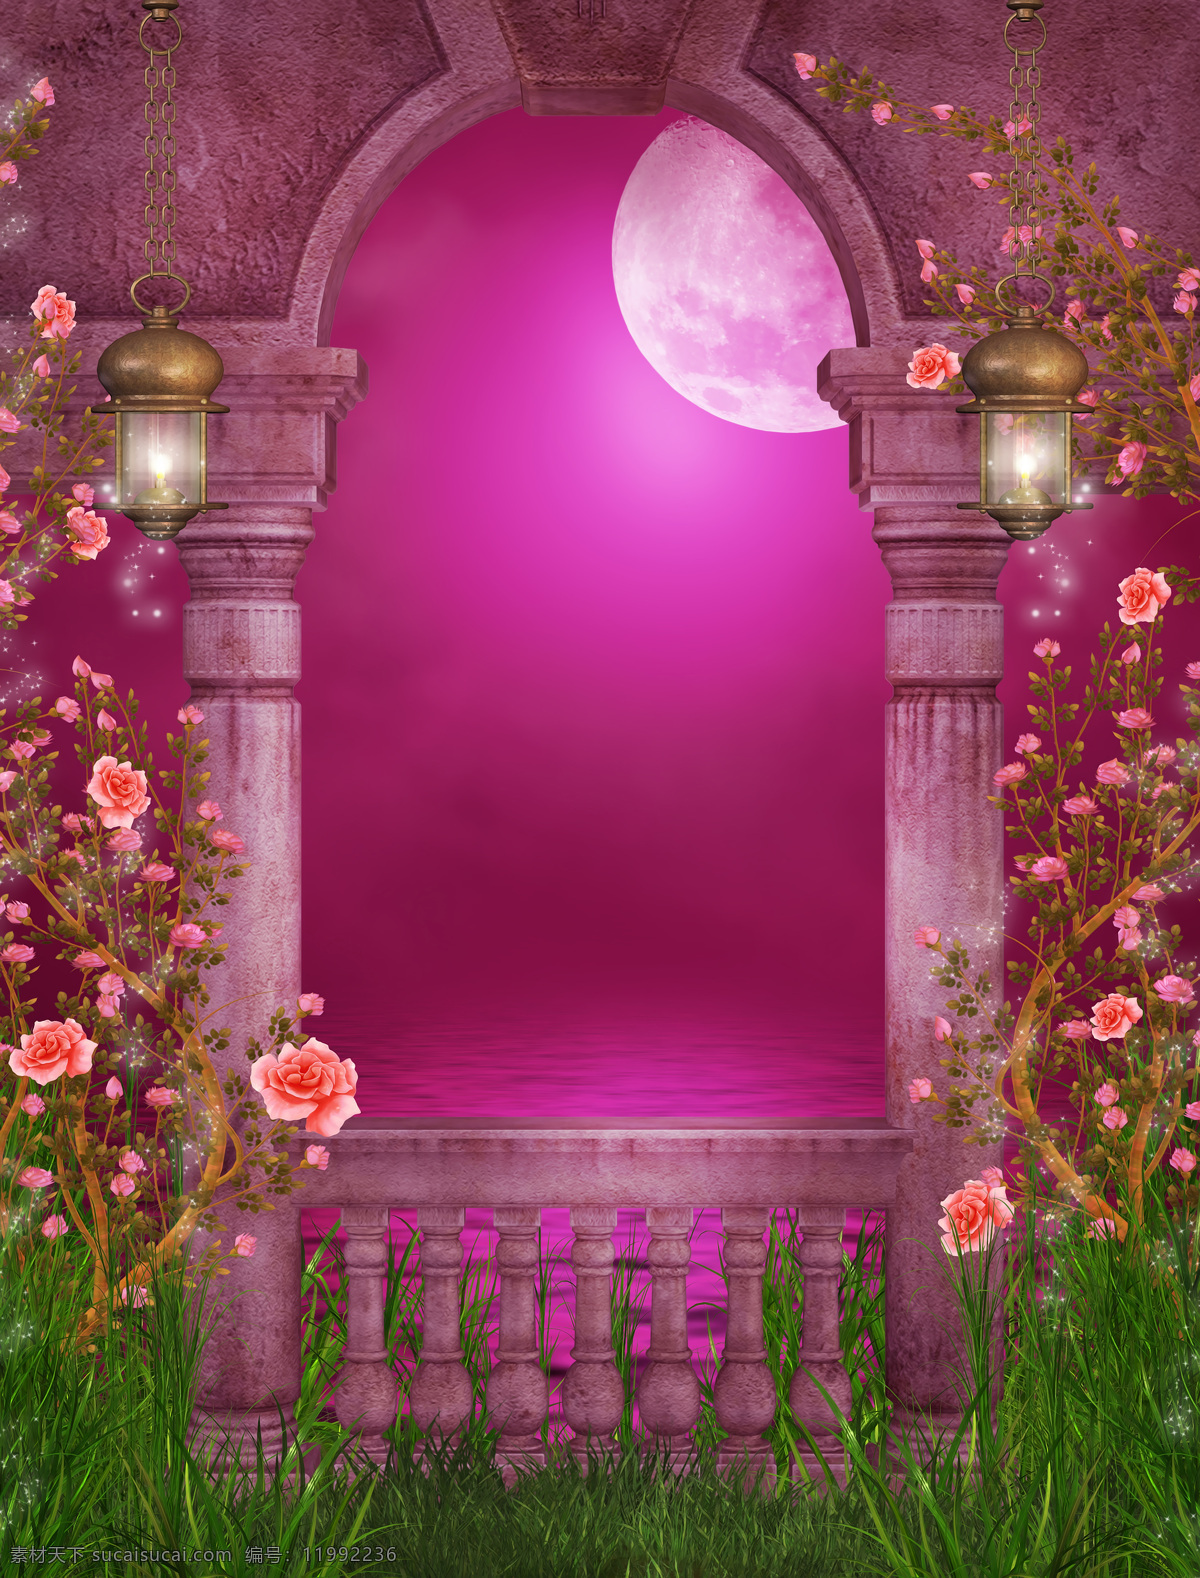 夜景 花园 背景 墙 欧洲 欧式 月亮 玫瑰花 夜空 浪漫 背景墙 背景图片 装饰画 免费素材下载